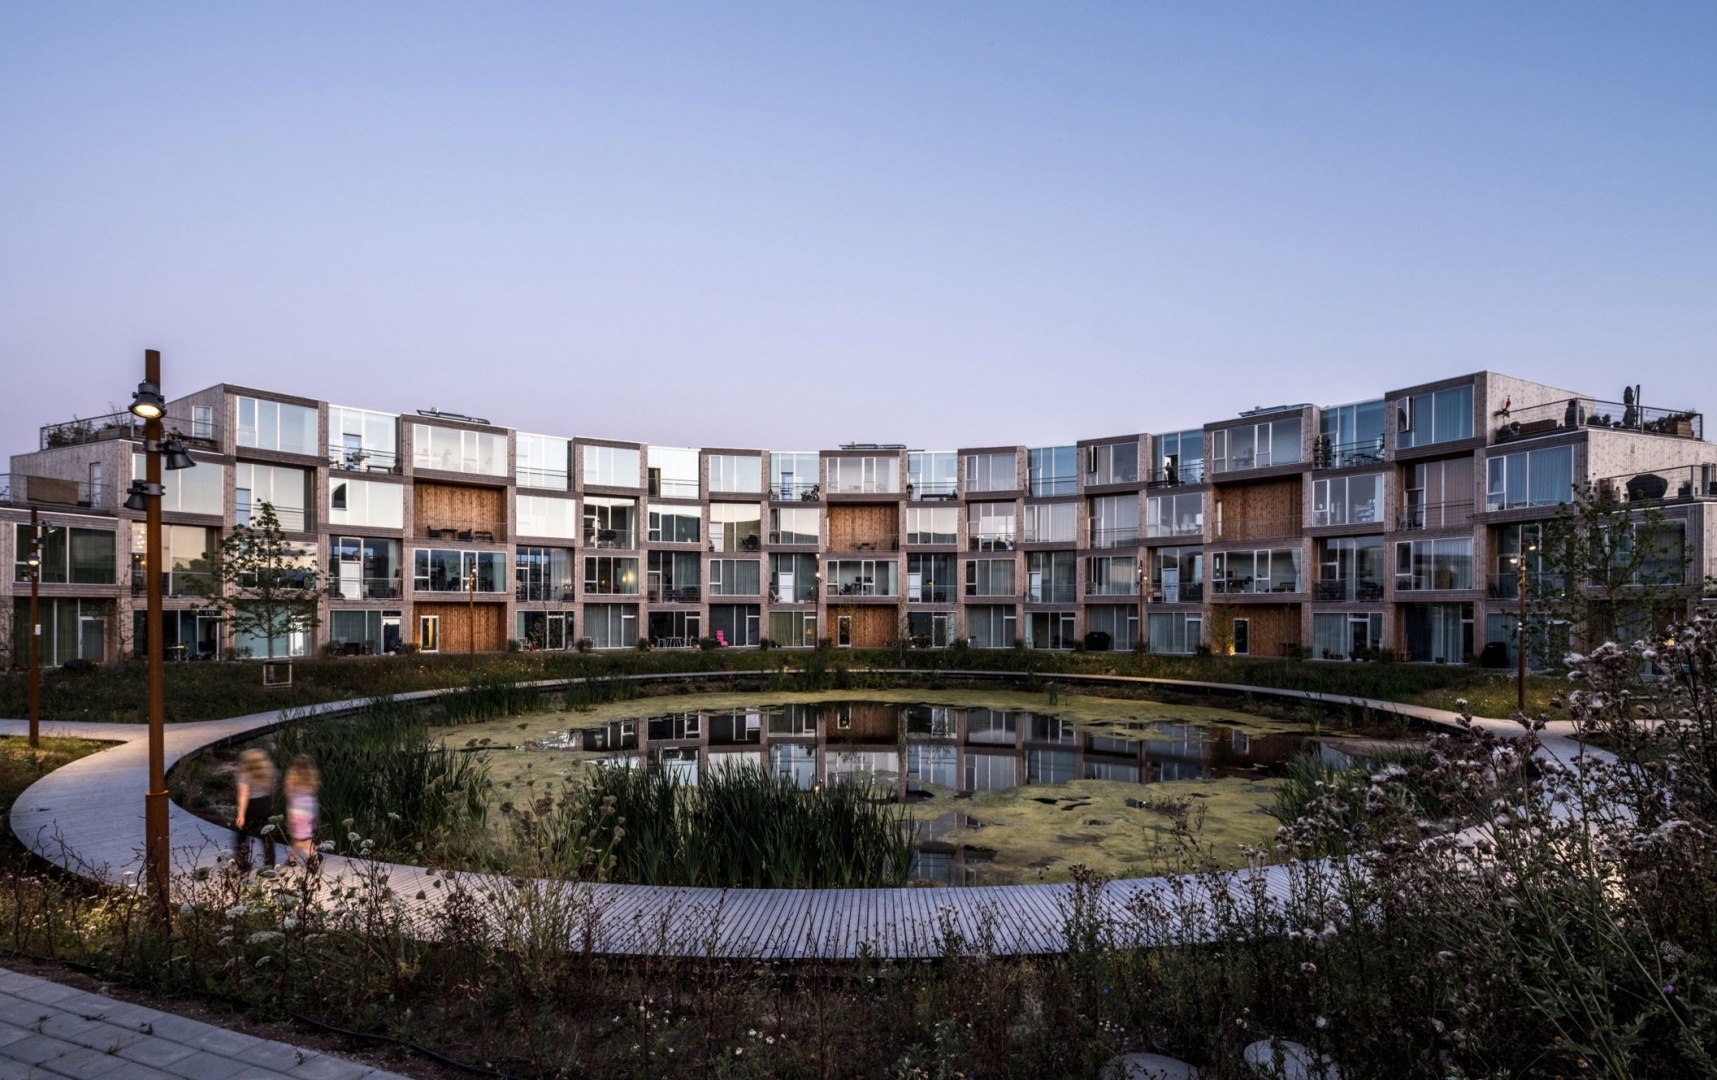 Студия BIG построила модульный жилой комплекс в Дании